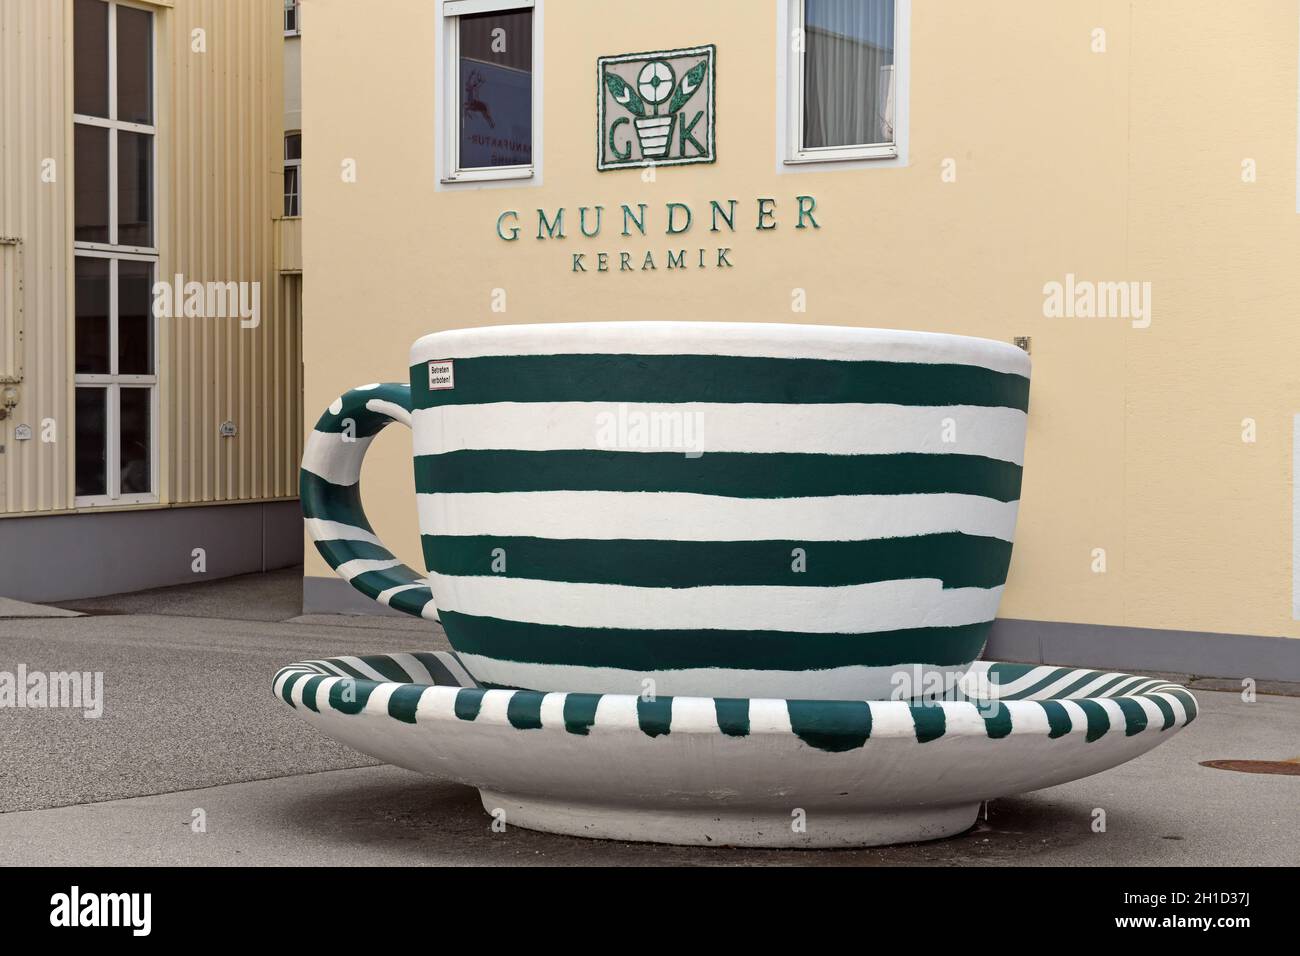 Eingang zur Fabrik der Gmundner Keramik in Gmunden mit einer überdimensionalen Kaffeetasse im typischen Gmundner Streifen-Design - ingresso al GMU Foto Stock